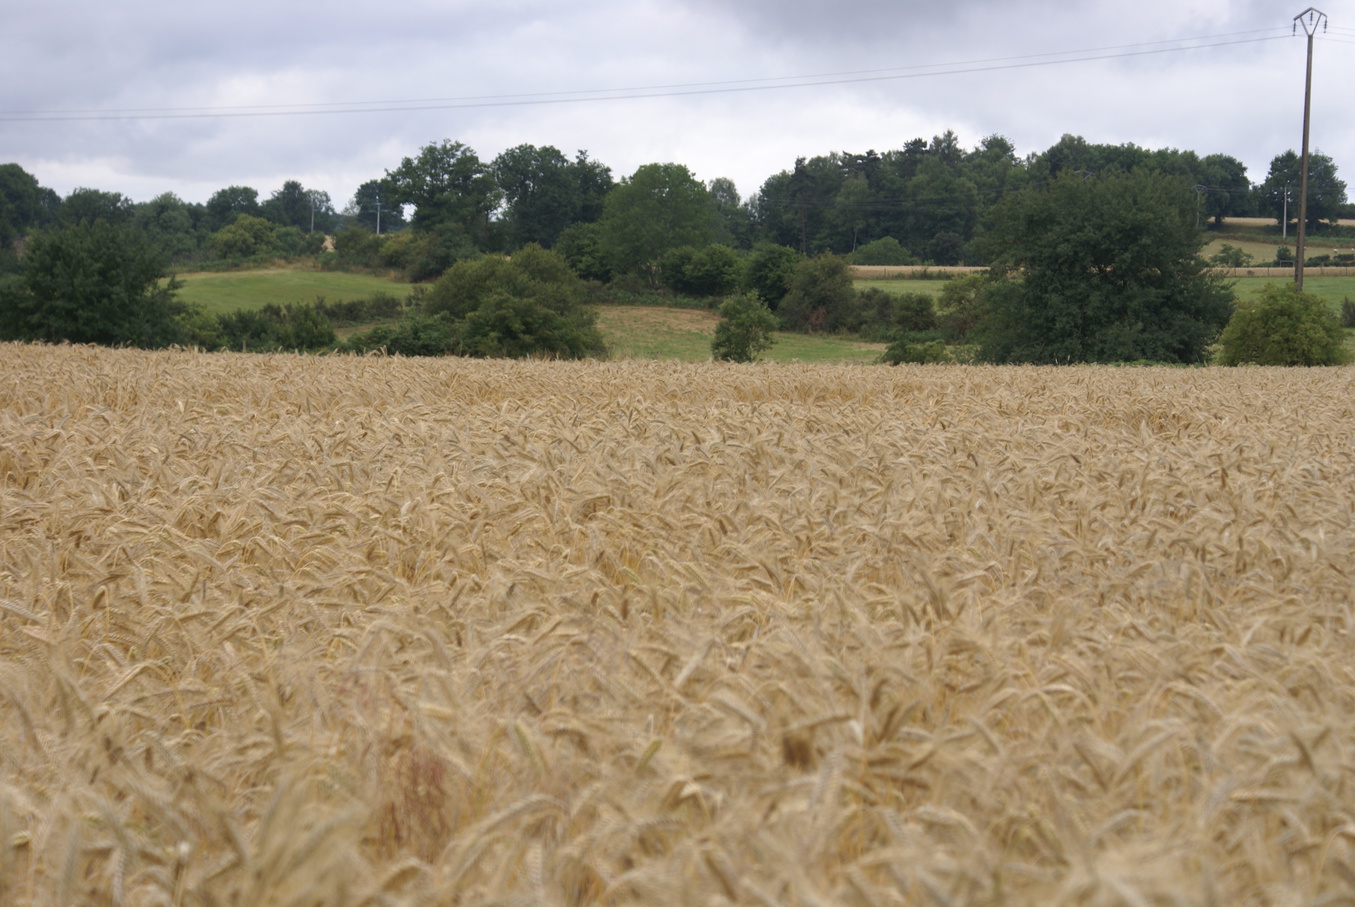 En Auvergne, des agriculteurs collaborent avec Météo France pour s'adapter aux risques climatiques